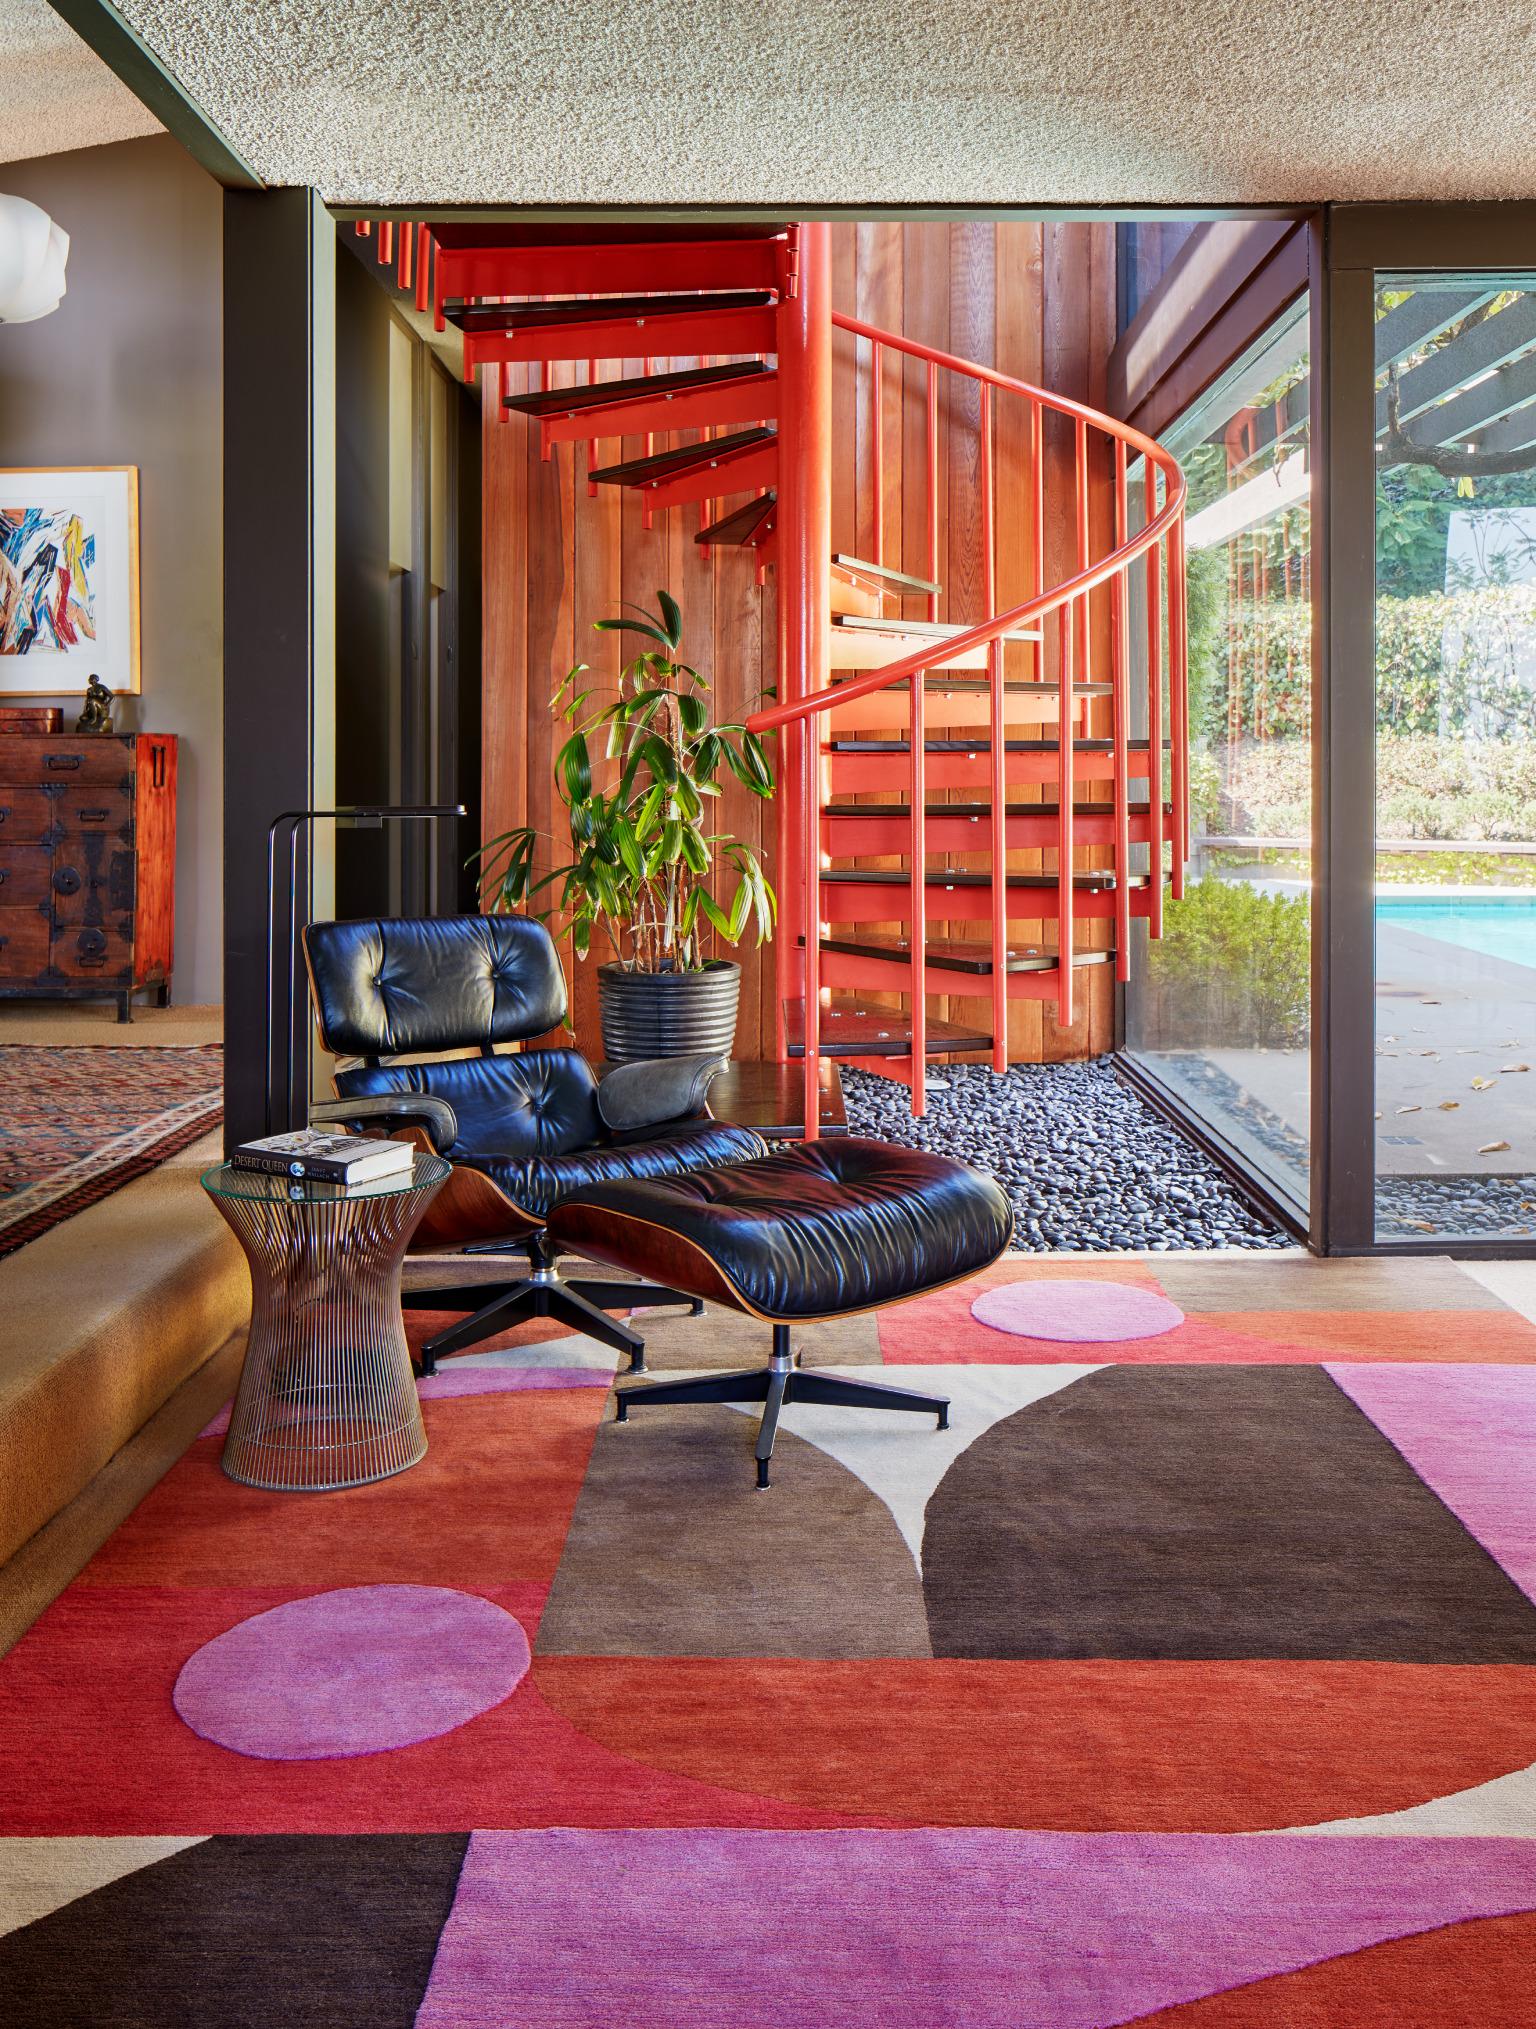 Inspiriert vom mexikanischen Mid-Century-Modernismus, verwendet dieser Teppich unkonventionelle geometrische Formen und gedämpfte Farbtöne, um ihre zeitlosen Kompositionen mit Leichtigkeit zu inszenieren.

Erik Lindstrom bietet eine kuratierte